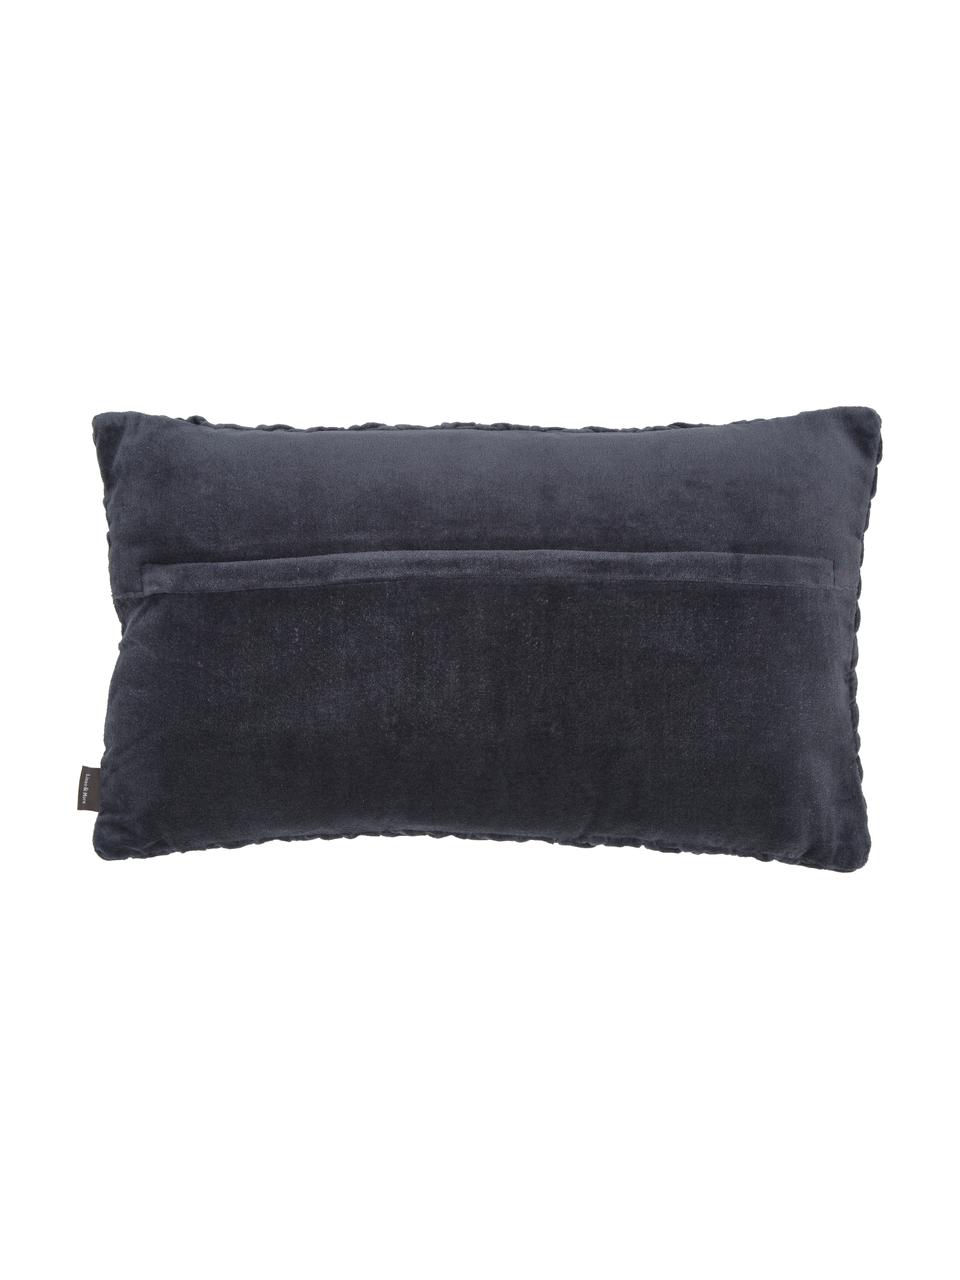 Poduszka z aksamitu z wypełnieniem Smock, Tapicerka: 100% aksamit bawełniany, Ciemny szary, S 30 x D 50 cm